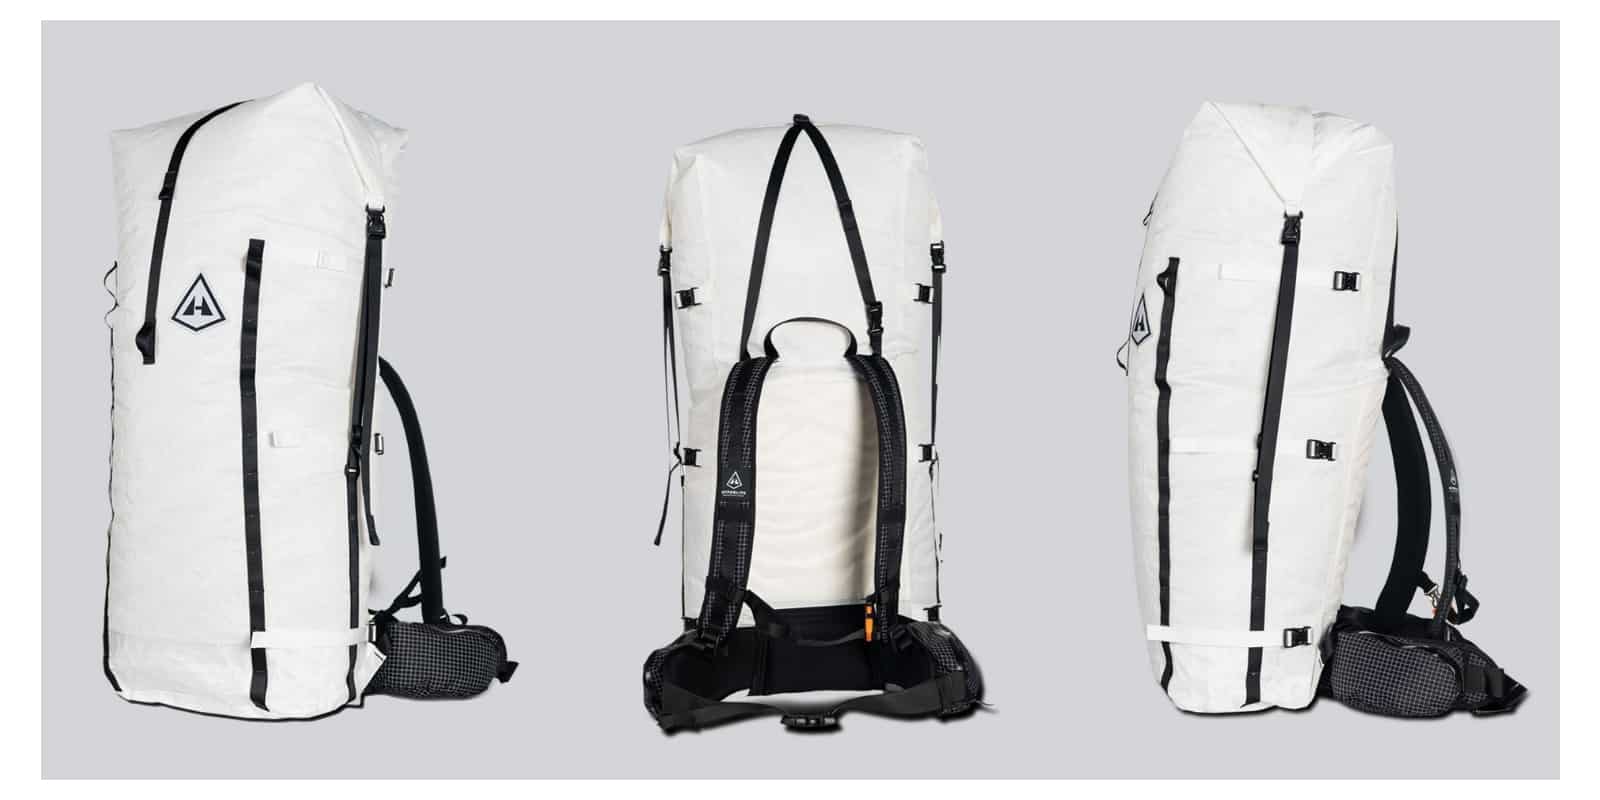 Hyperlite Mountain Gear Porter 5400 Backpack Review Backpacking Light